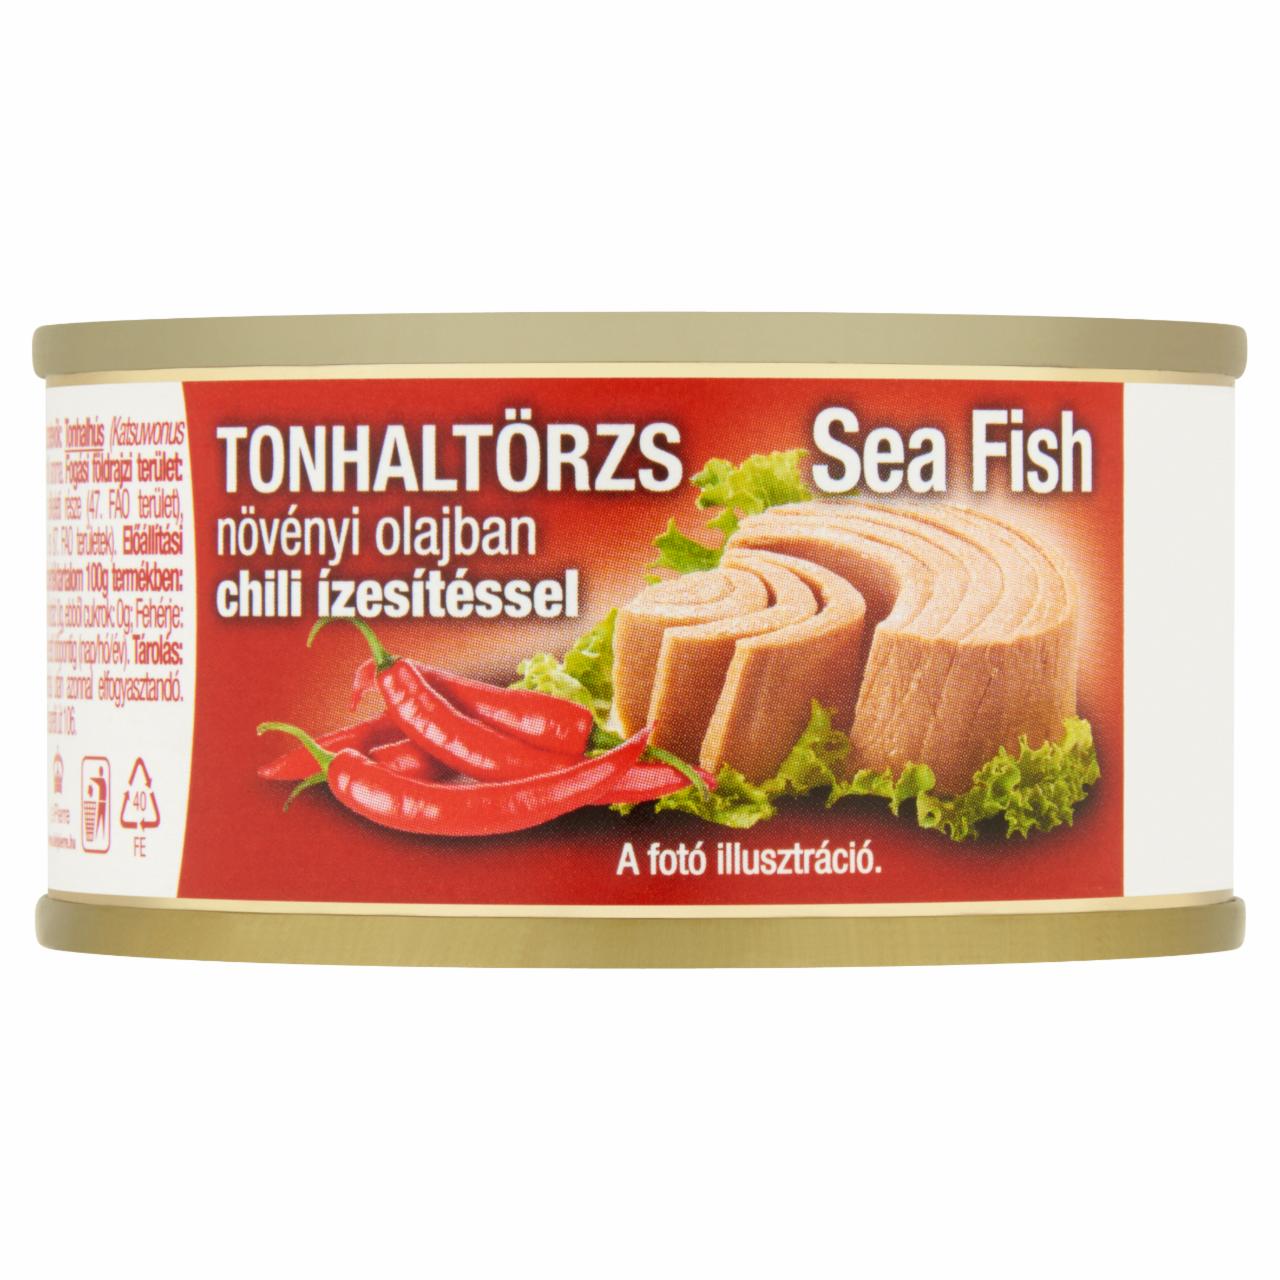 Képek - Sea Fish tonhaltörzs növényi olajban chili ízesítéssel 80 g